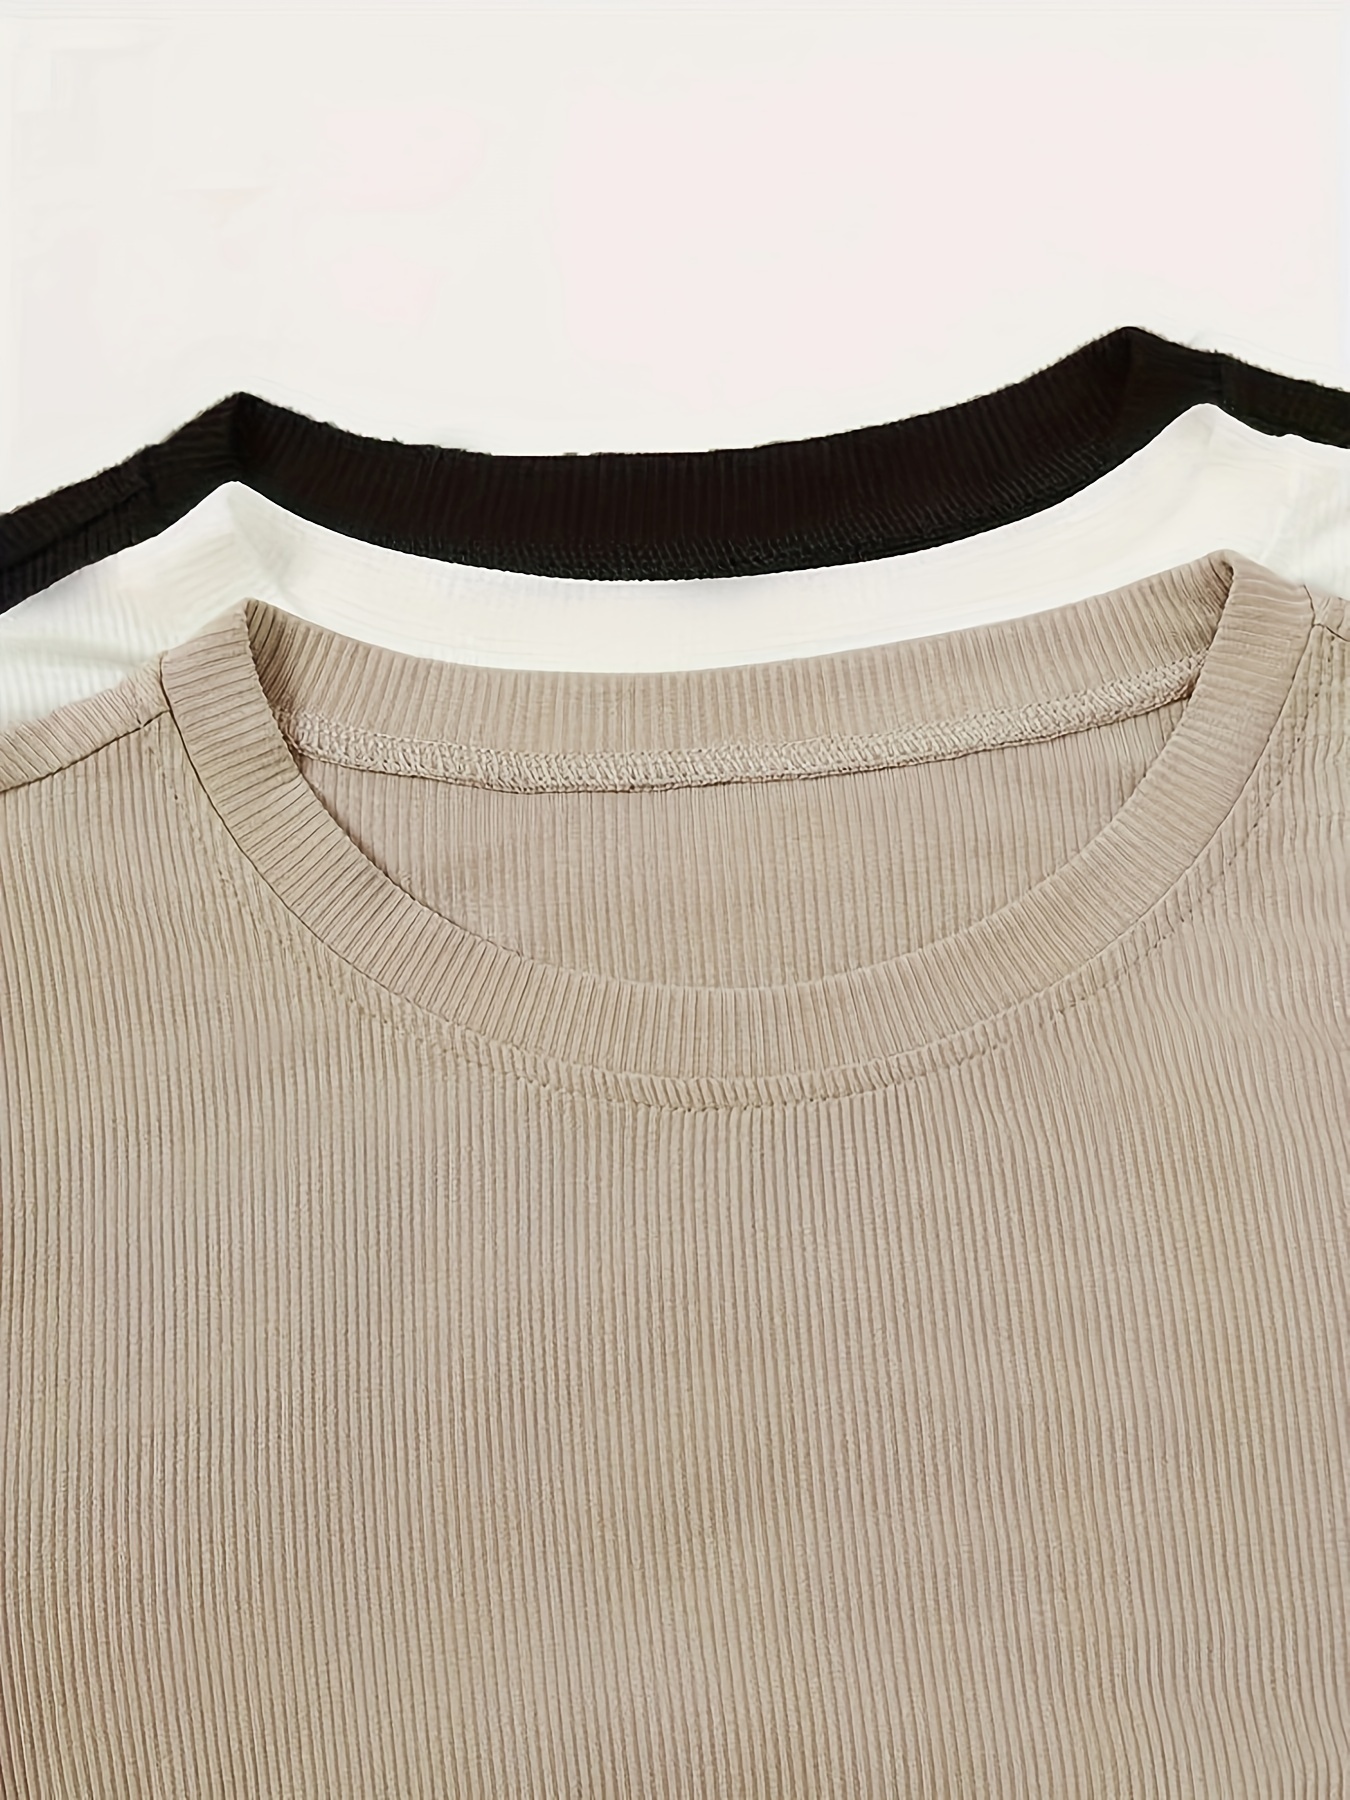 Camiseta manga larga unicolor con cuello redondo y botones delanteros